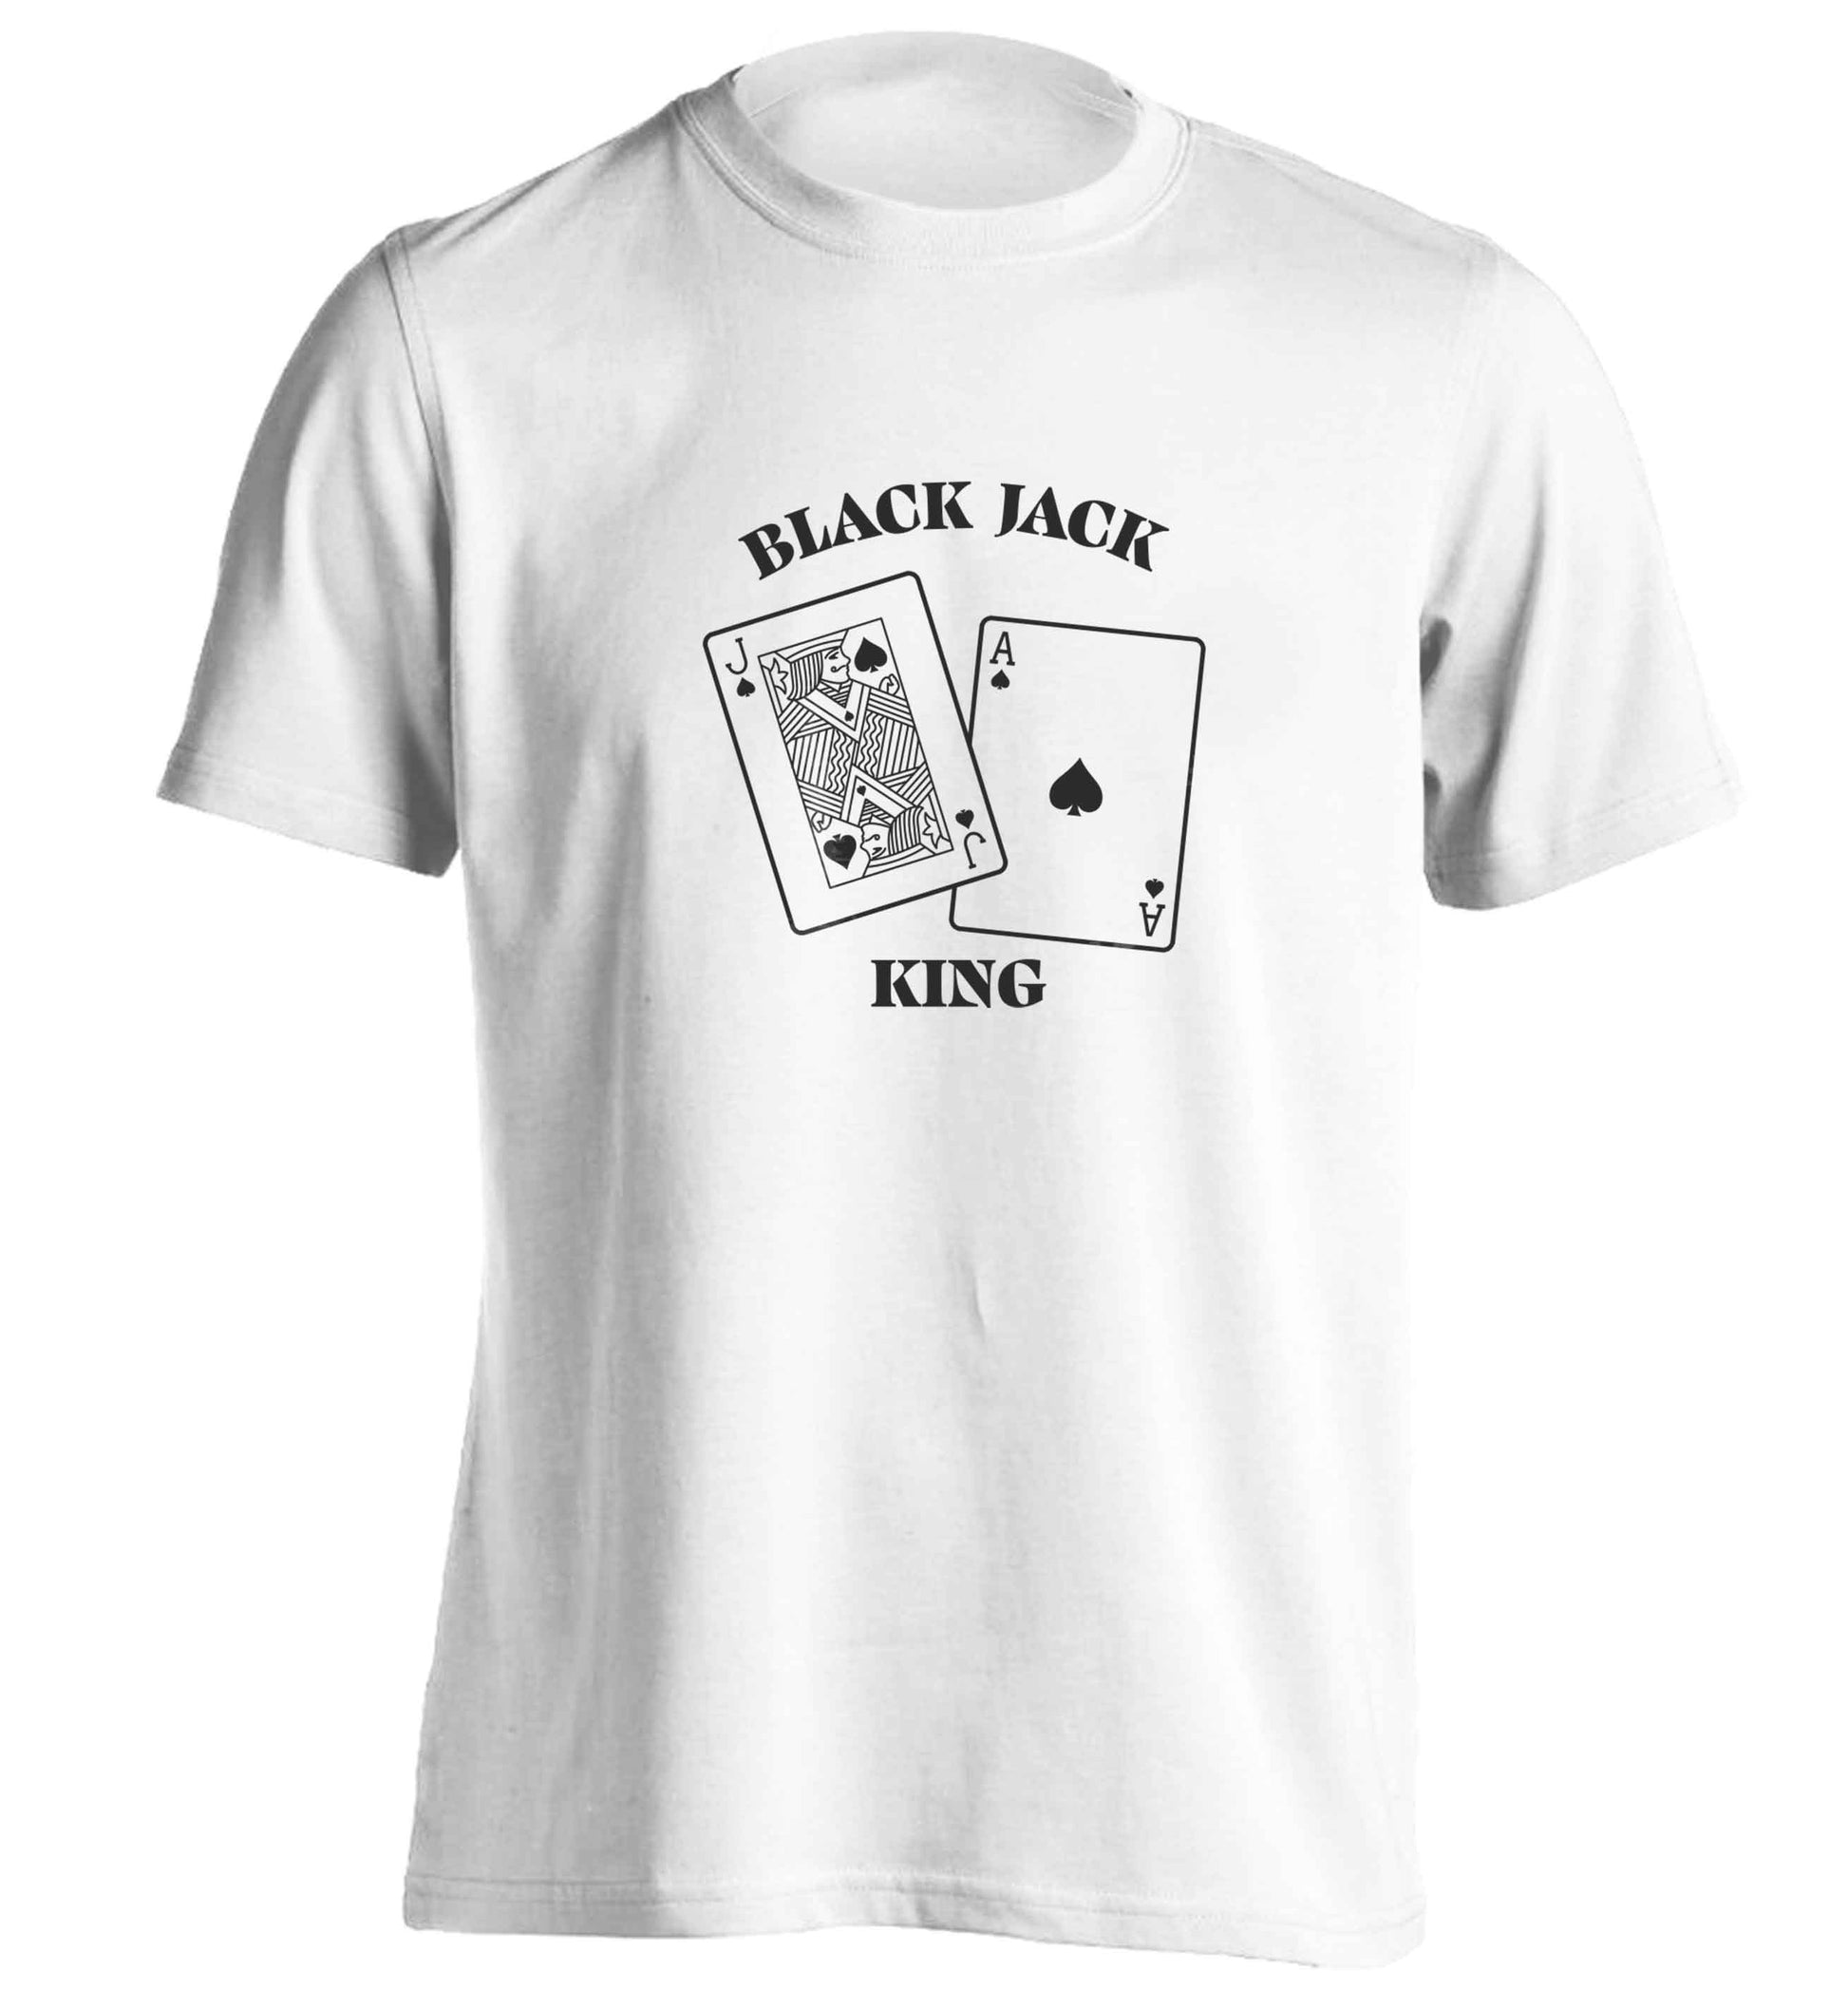 Blackjack king adults unisex white Tshirt 2XL